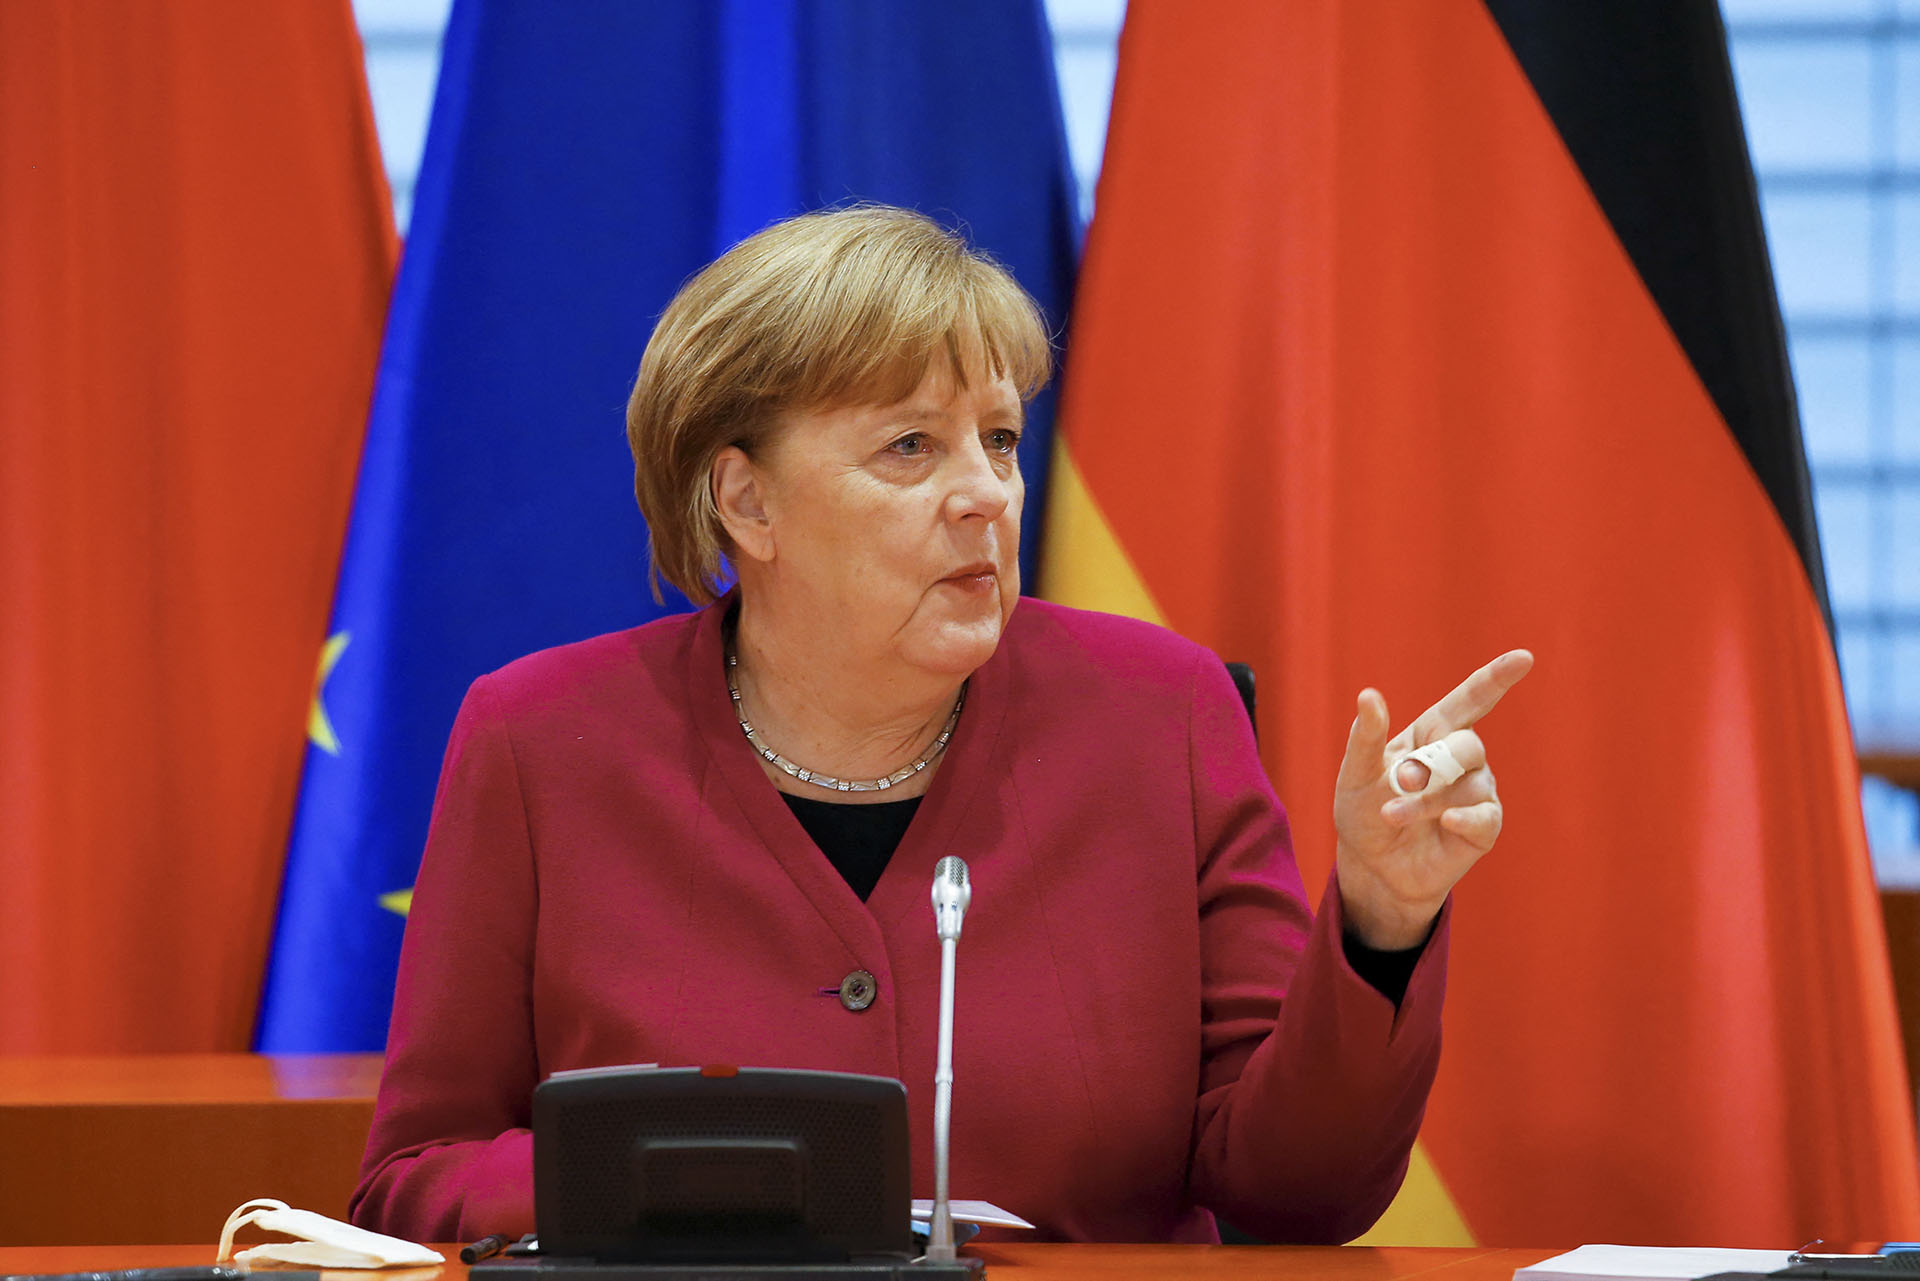 Merkelnek poltikai okai is lehetnek a klímavédelem hangsúlyozására